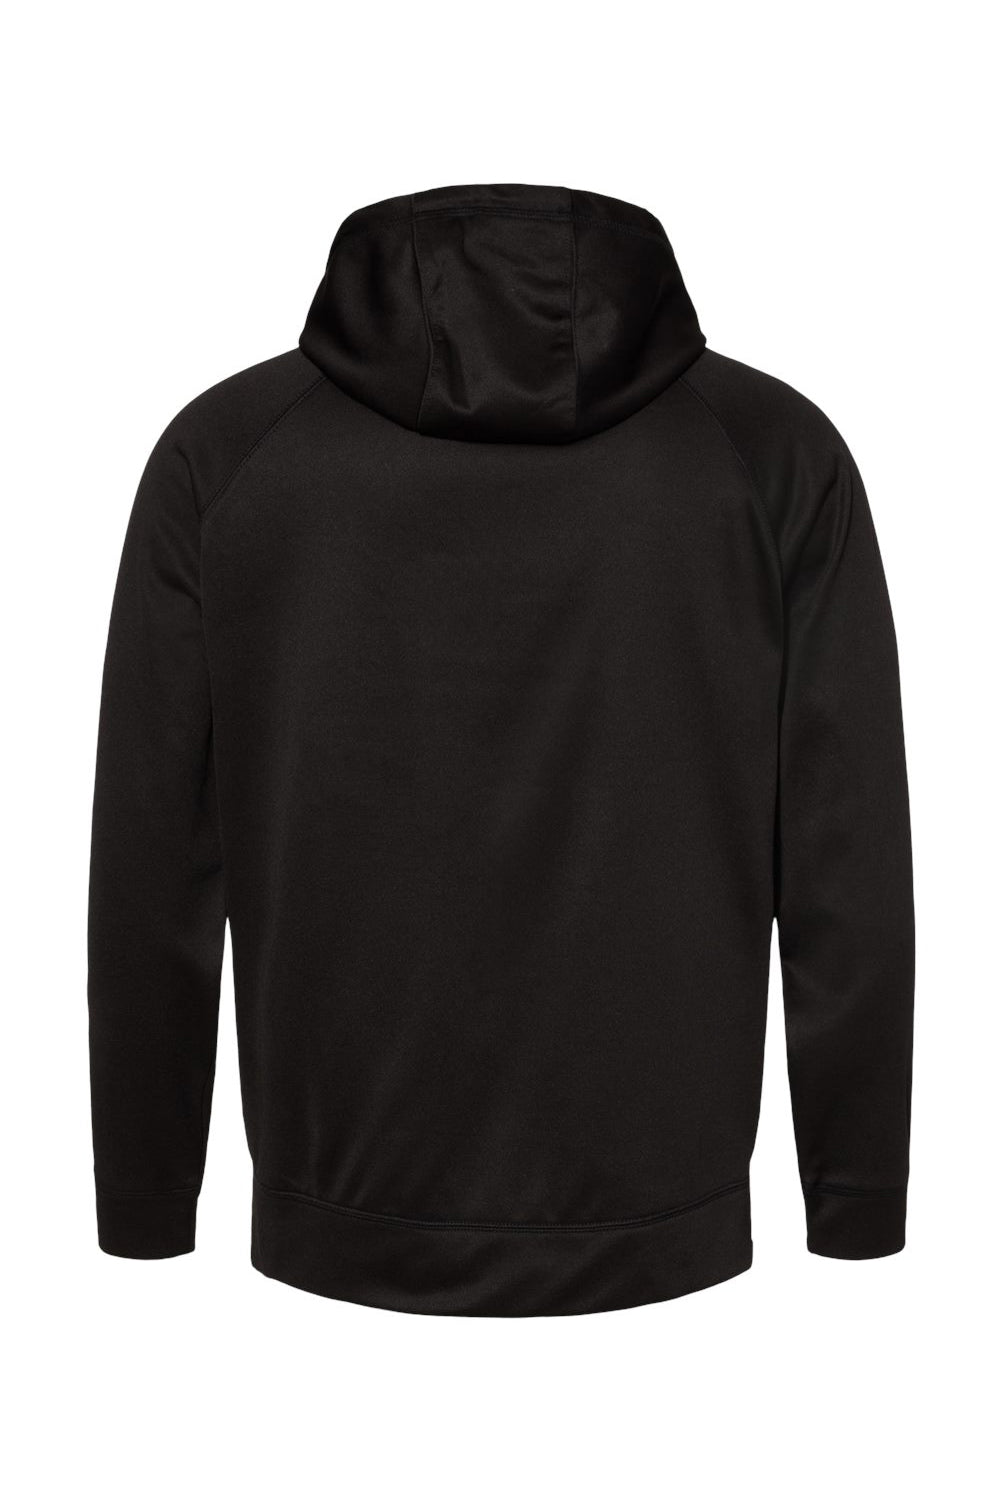 Burnside 8670 Mens Performance Raglan Hooded Sweatshirt Hoodie Black Flat Back